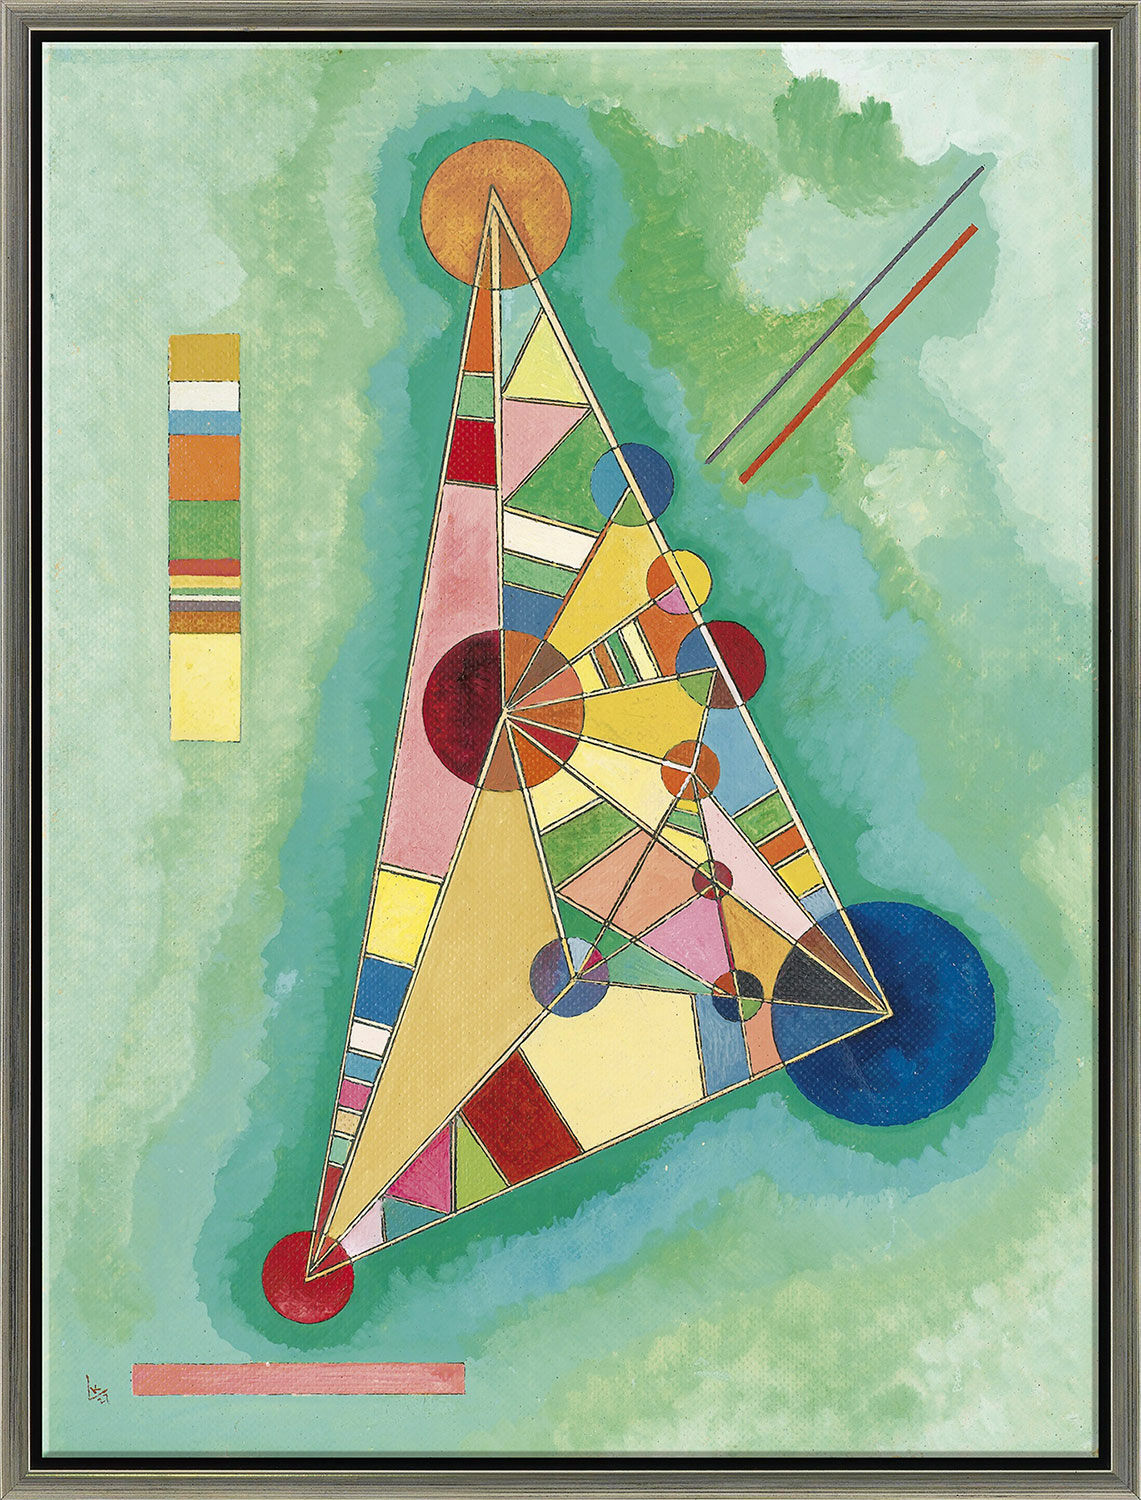 Beeld "Kleurendriehoek" (1927), ingelijst von Wassily Kandinsky